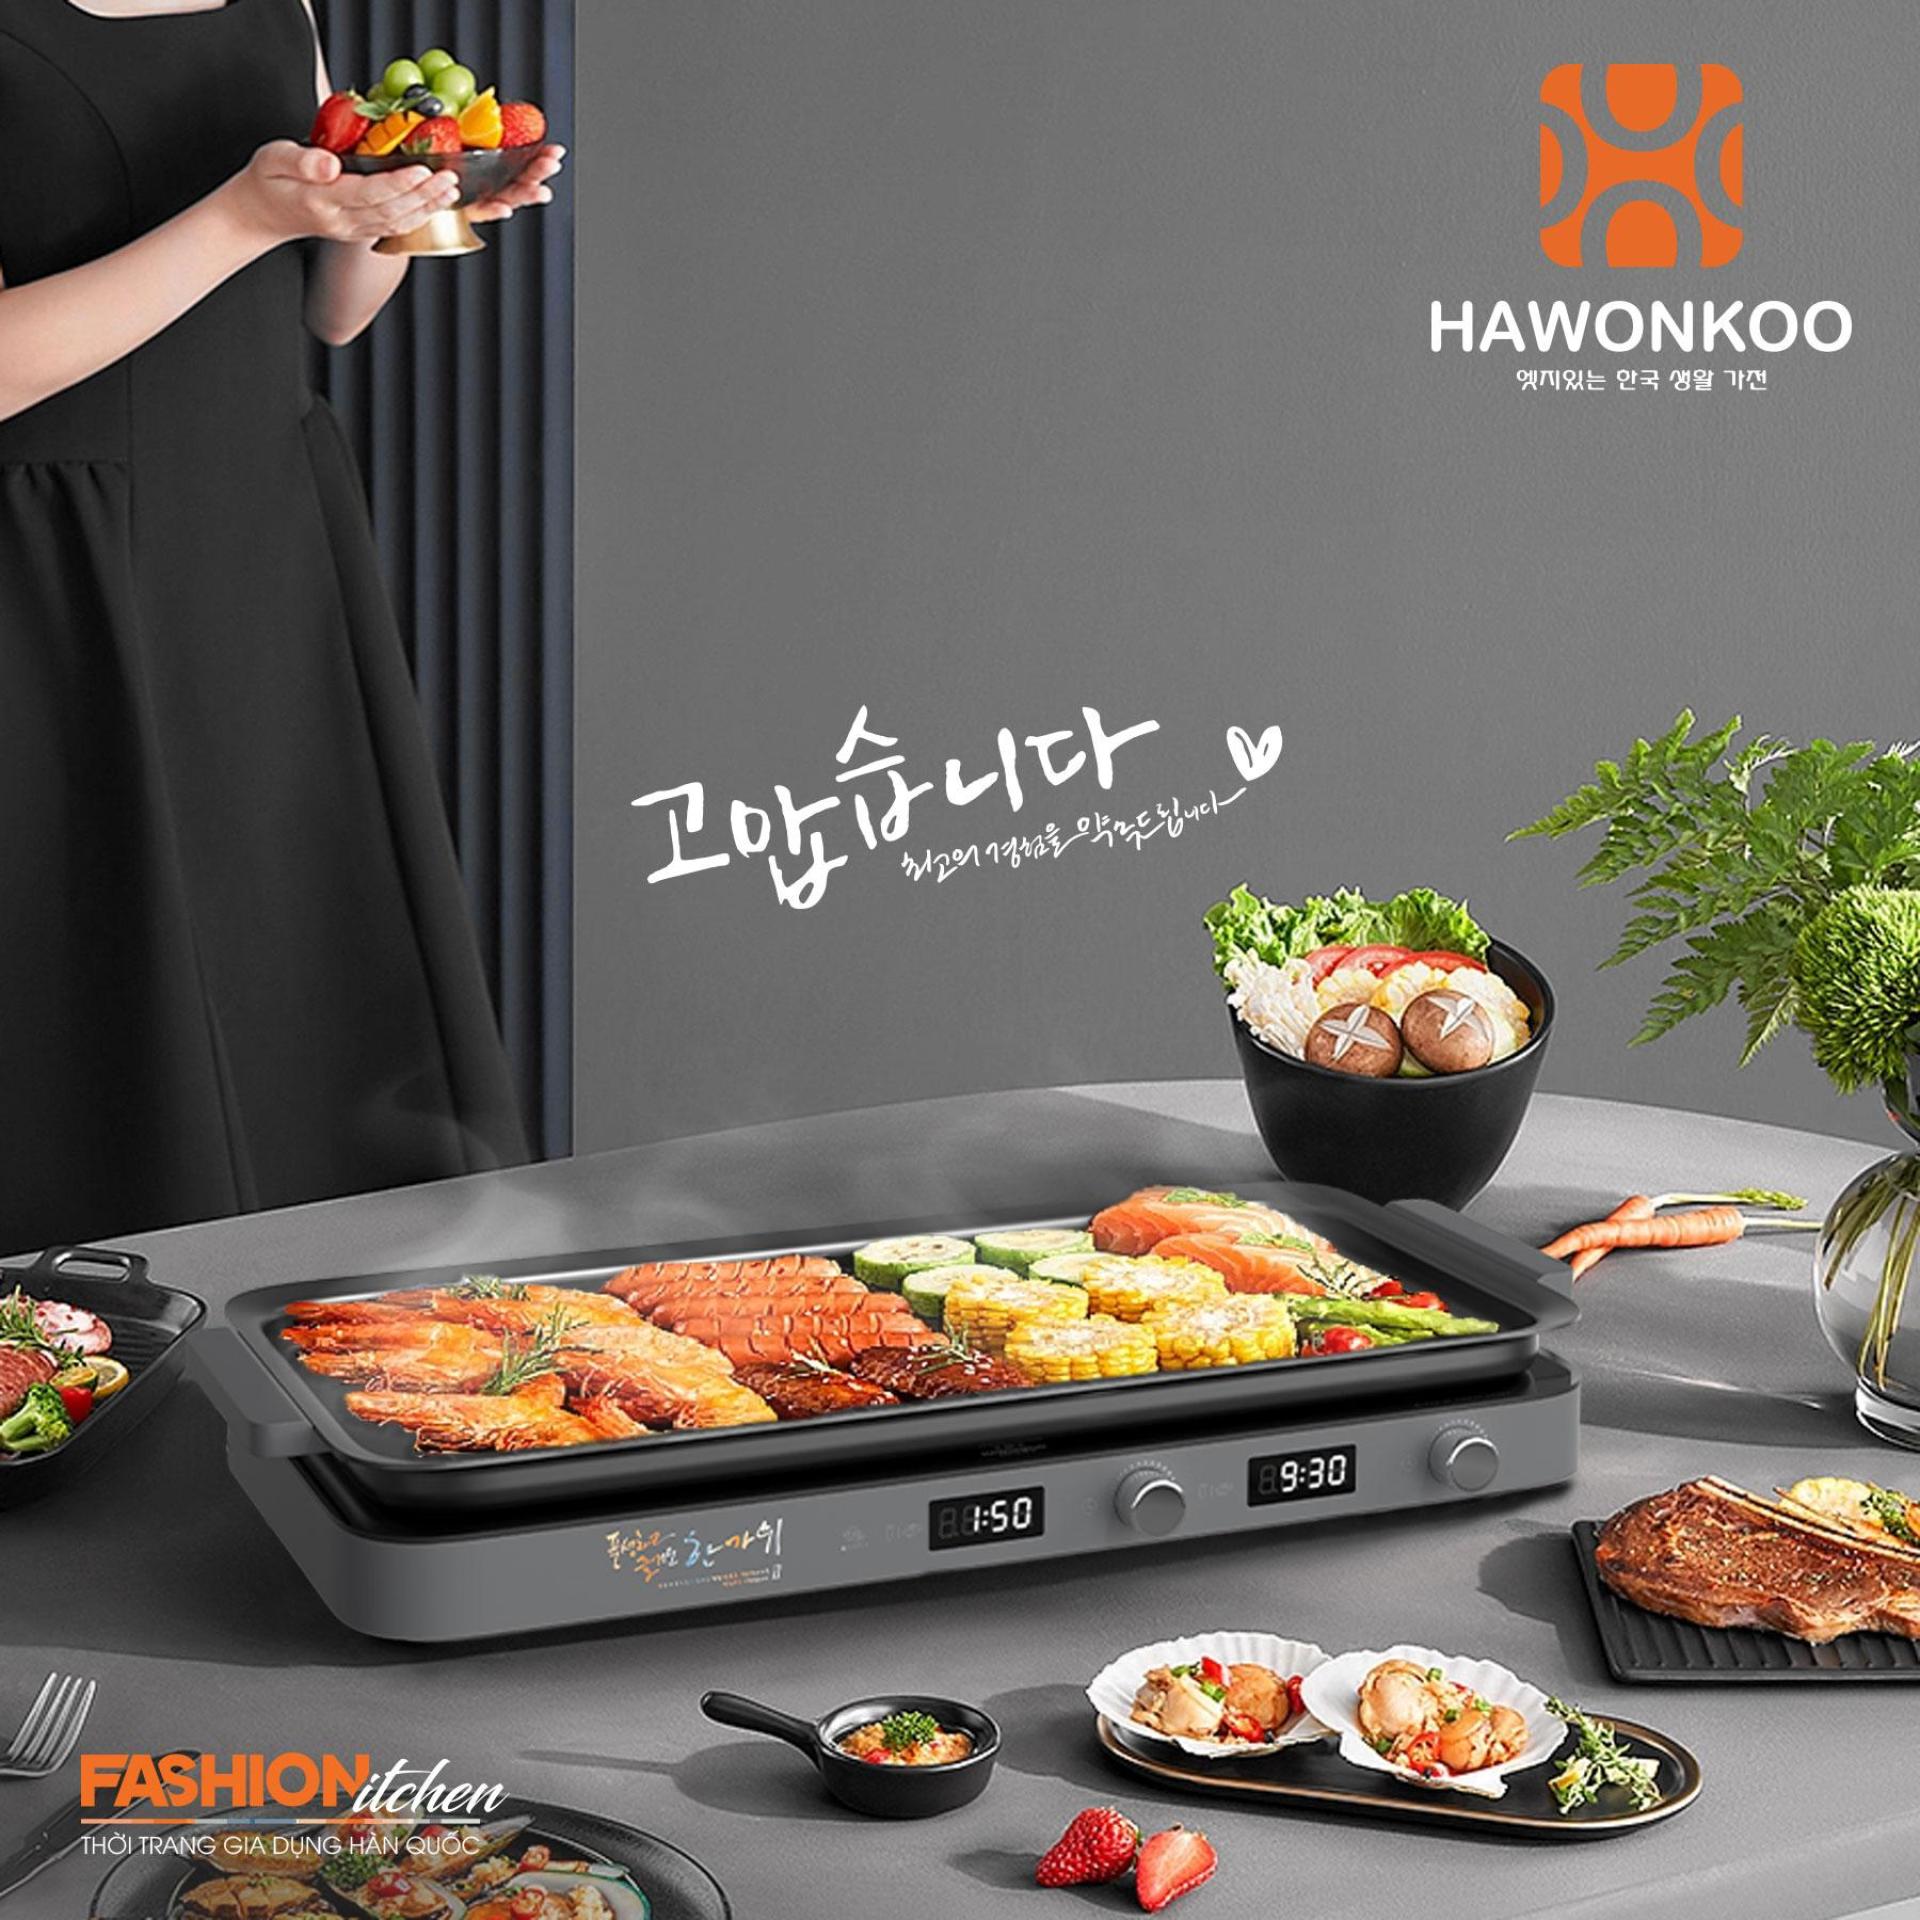 hawonkoo mceh 200 ii gr 1 - Bếp từ Hawonkoo MCEH-200-II đôi 2 từ đa năng